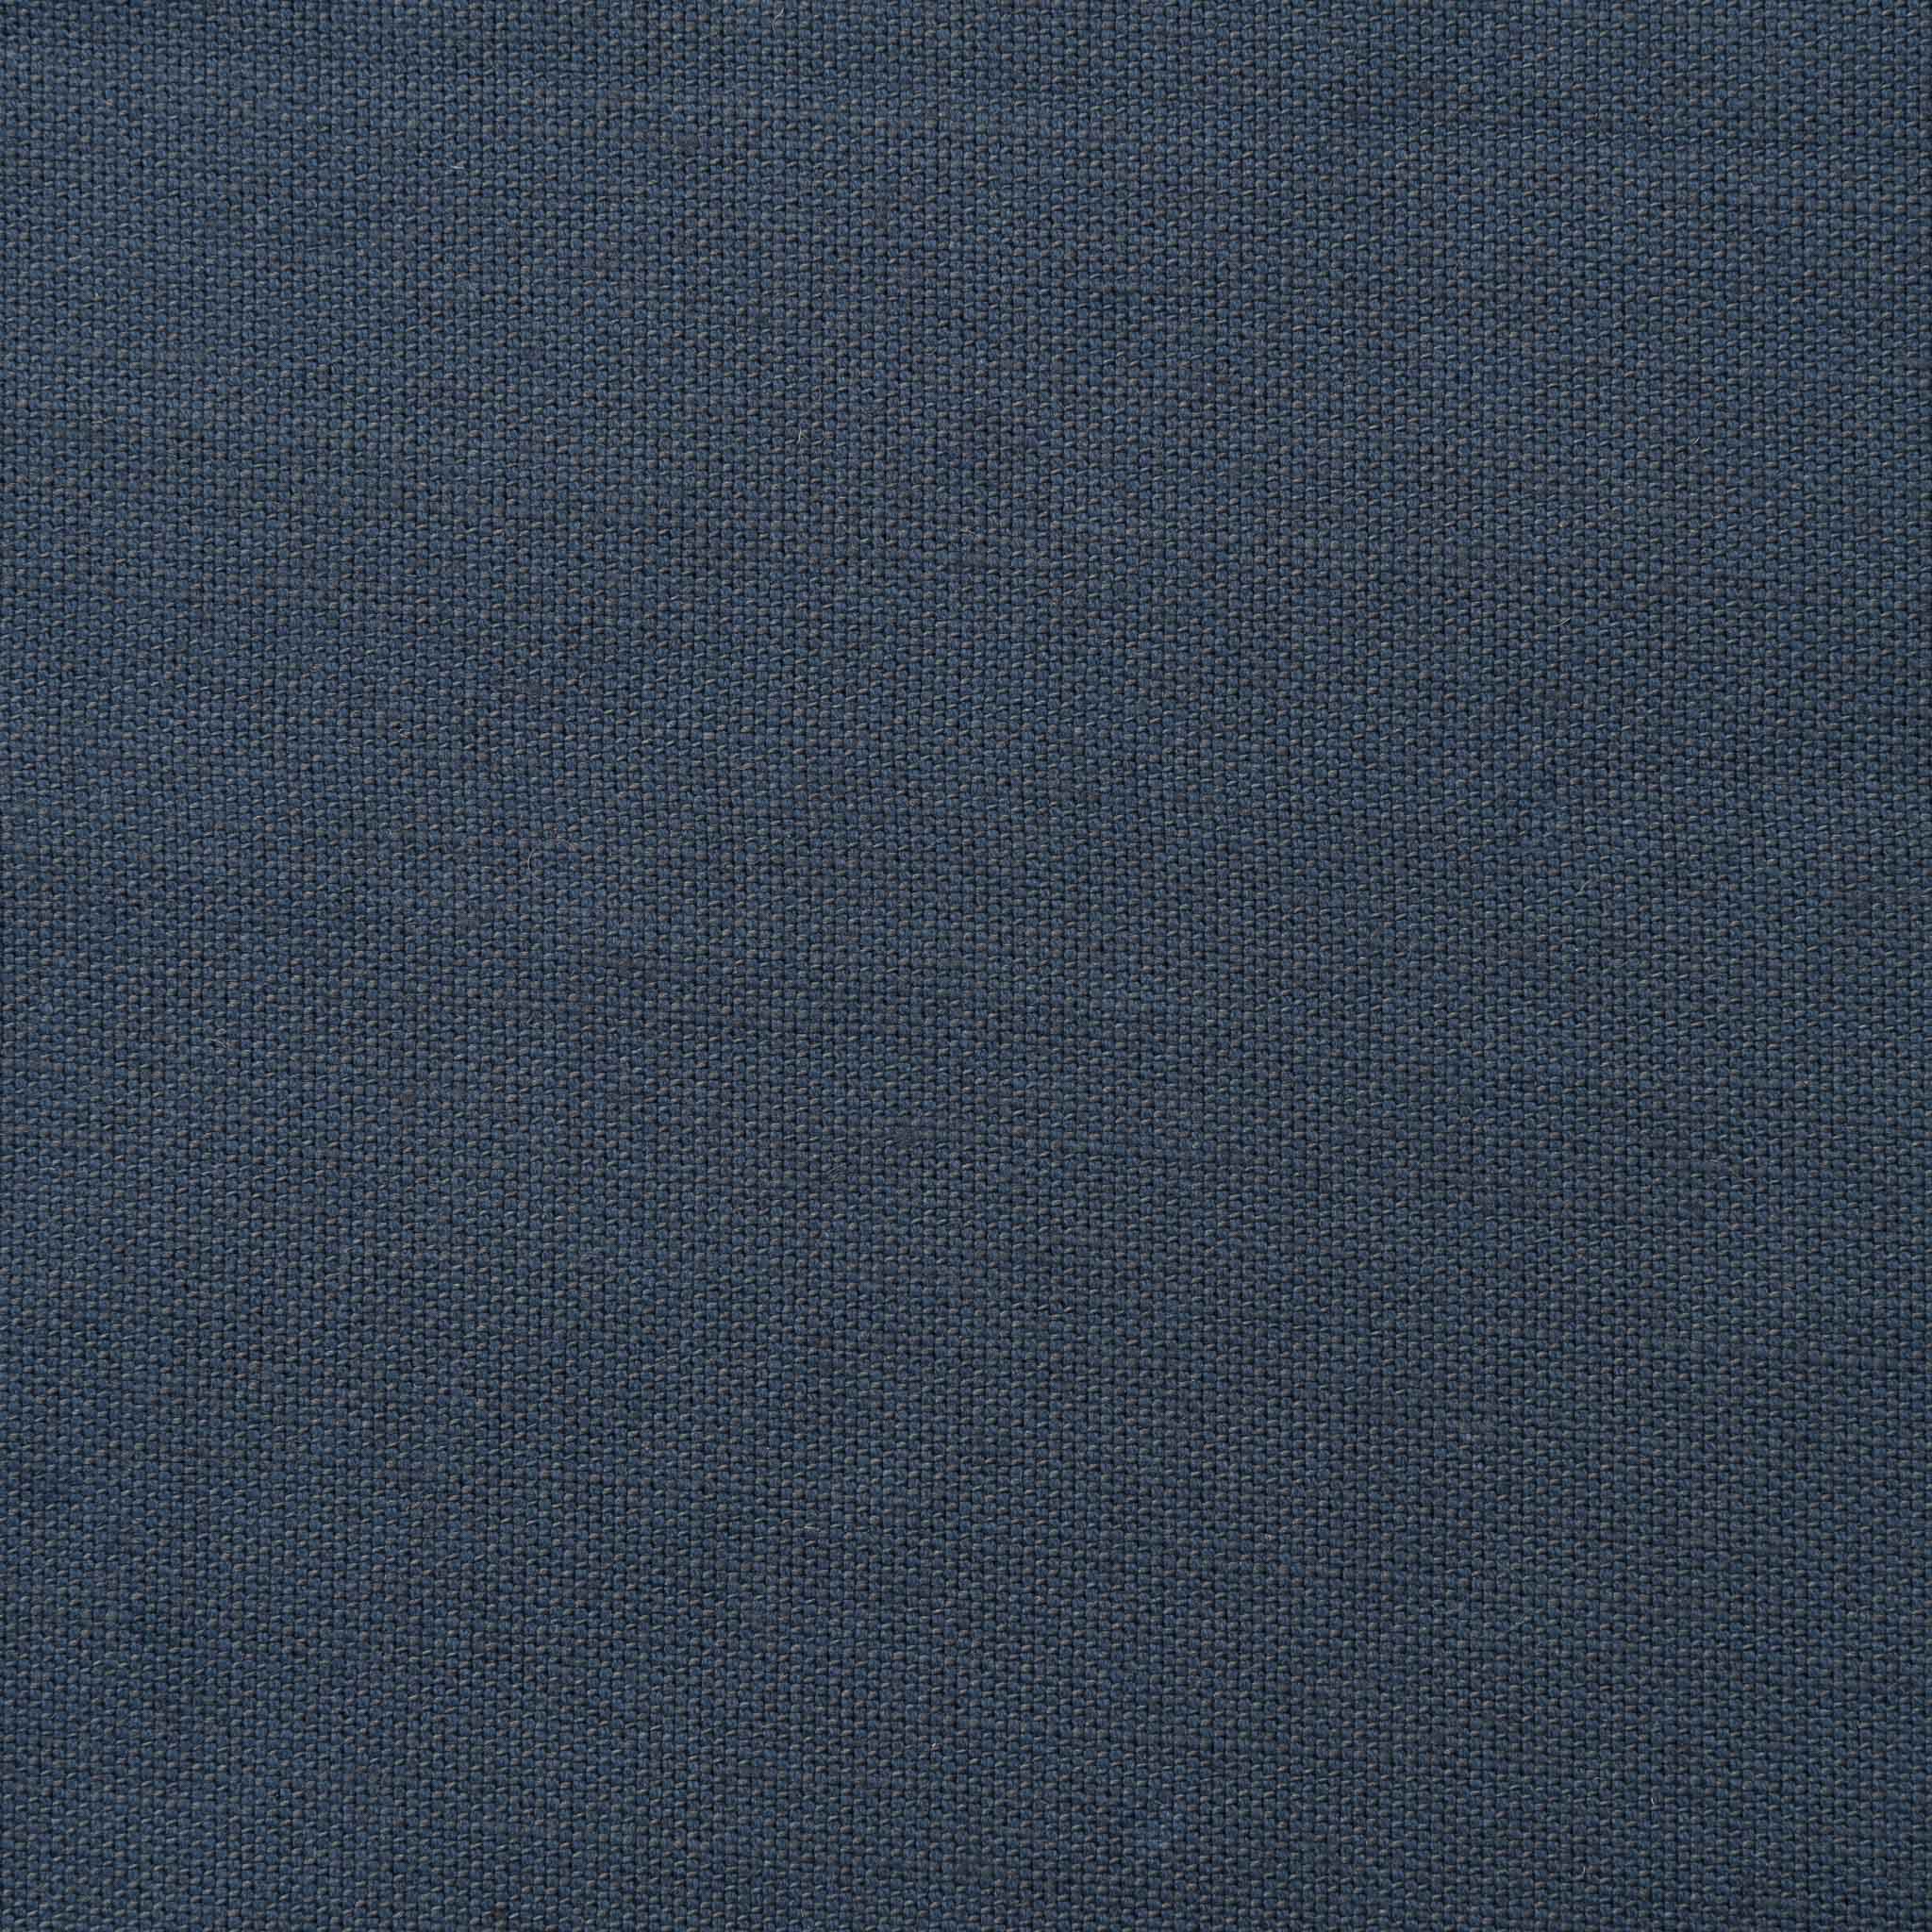 Woven Plain Fabric - Clovelly 50/158 Inkspot | Nicholas Engert Interiors